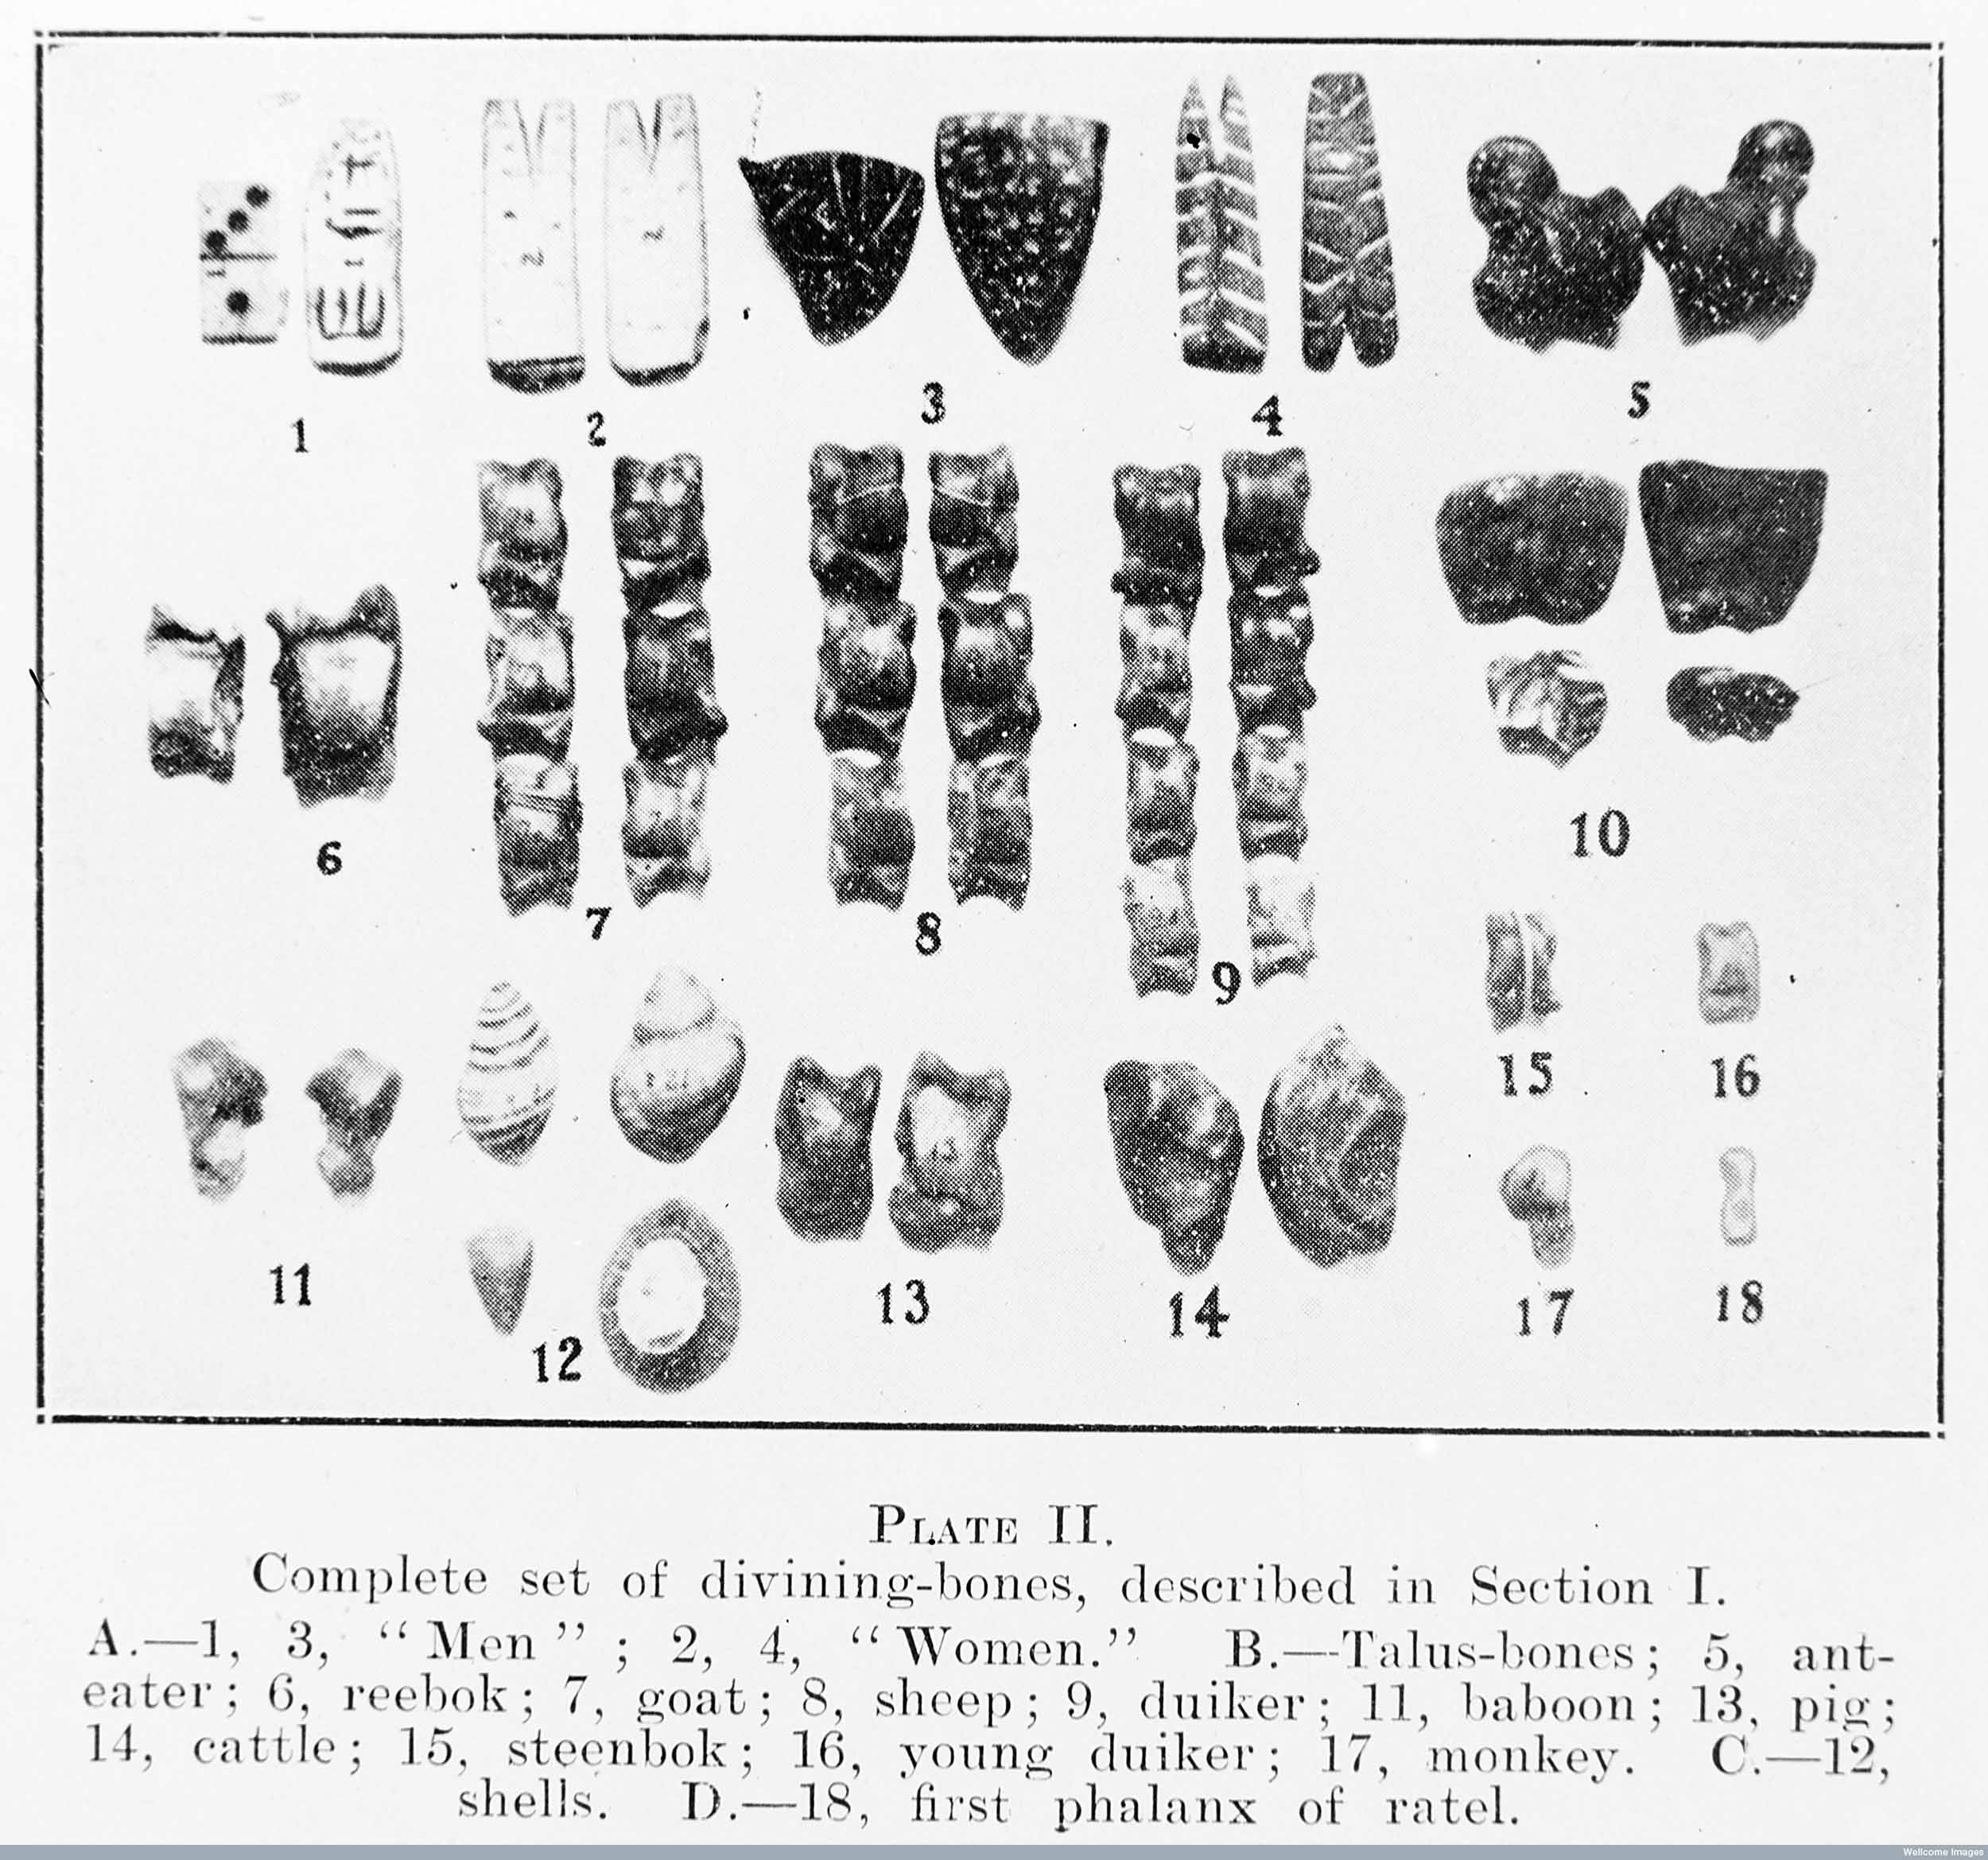 Ilustración de un conjunto completo de huesos de adivinación de Bantu Studies, por K.M. Watt y N.J.V. Warmelo. Copyright Wellcome Library, Londres. Creative Commons Attribution 4.0 International ().